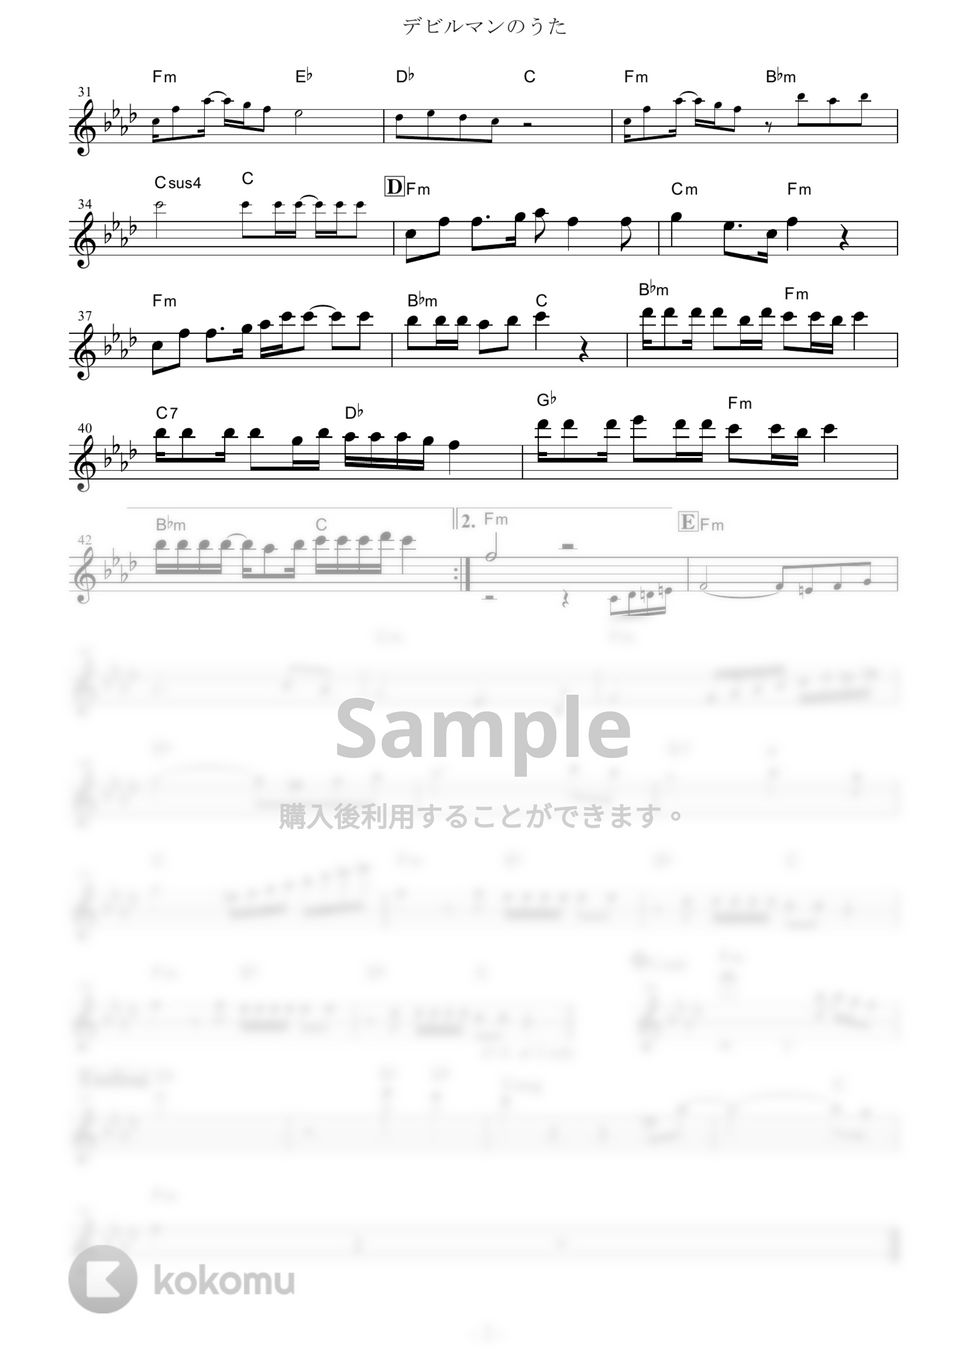 十田敬三、ボーカル・ショップ - デビルマンのうた (『デビルマン』 / in C) by muta-sax